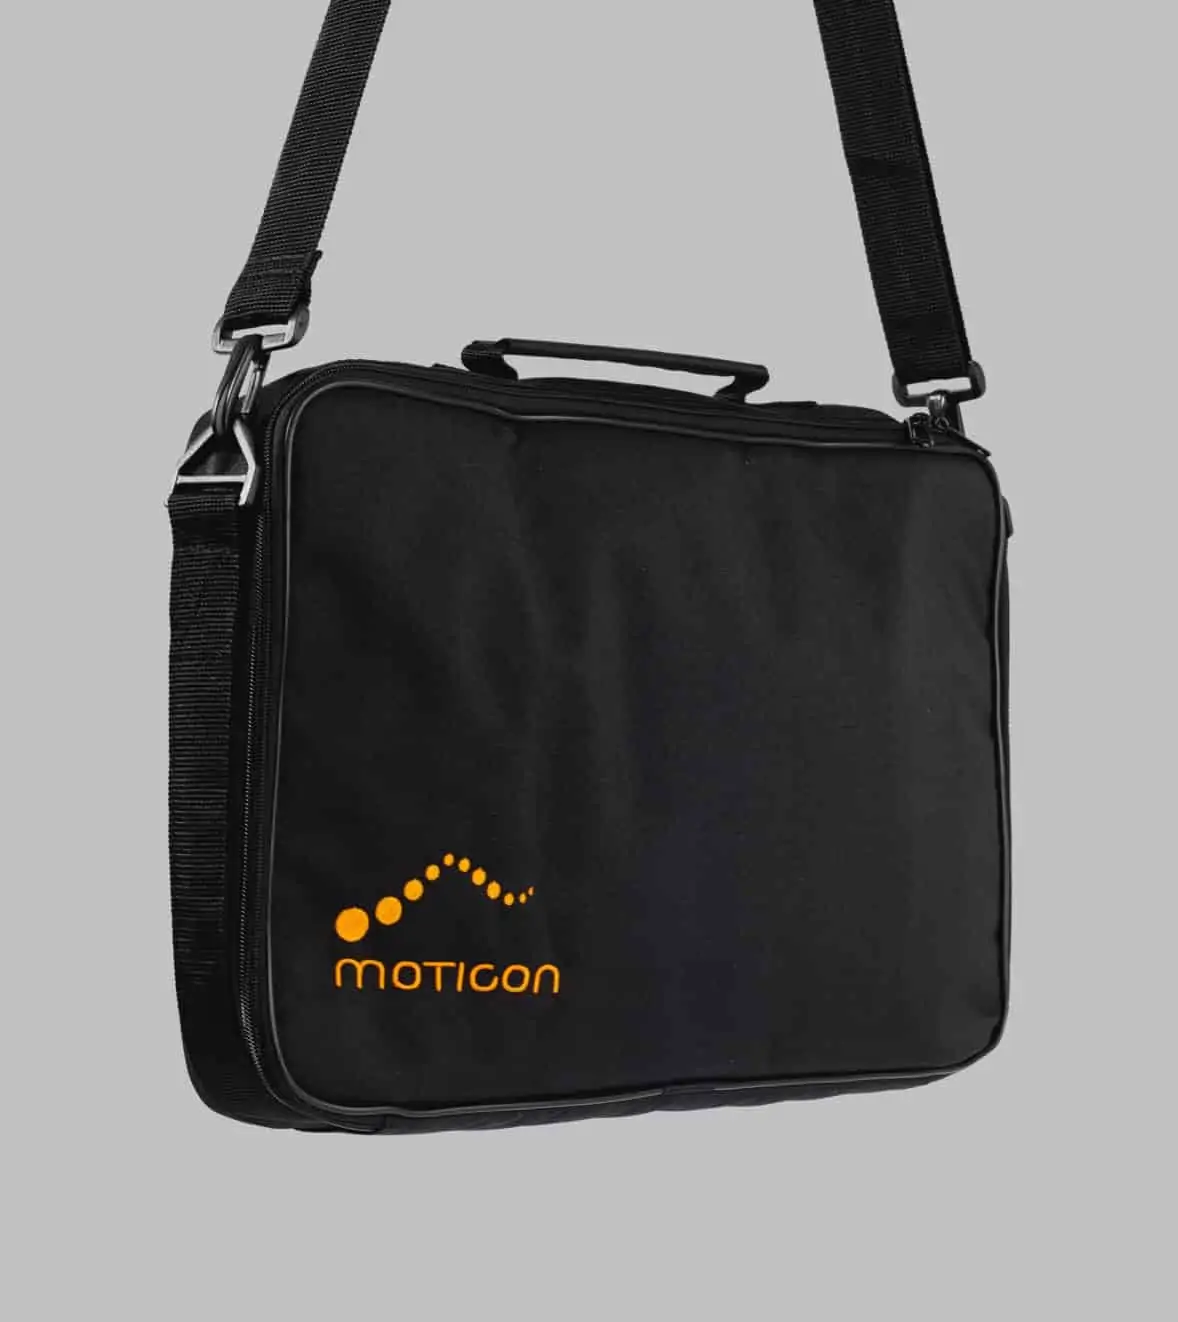 moticon-opengo-accessories